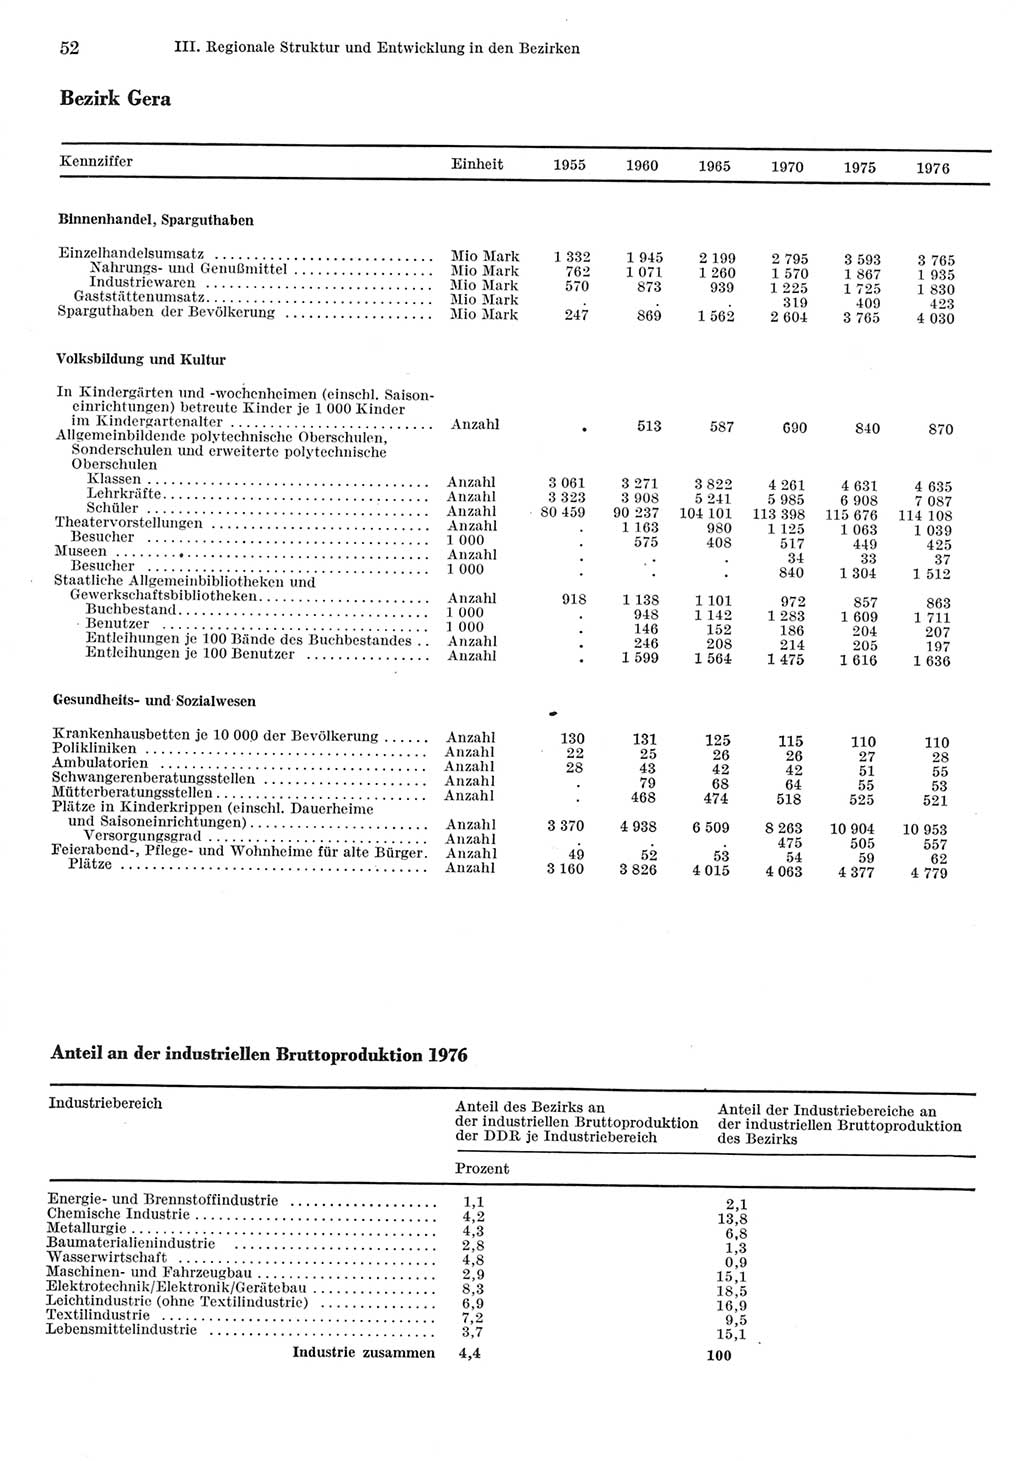 Statistisches Jahrbuch der Deutschen Demokratischen Republik (DDR) 1977, Seite 52 (Stat. Jb. DDR 1977, S. 52)